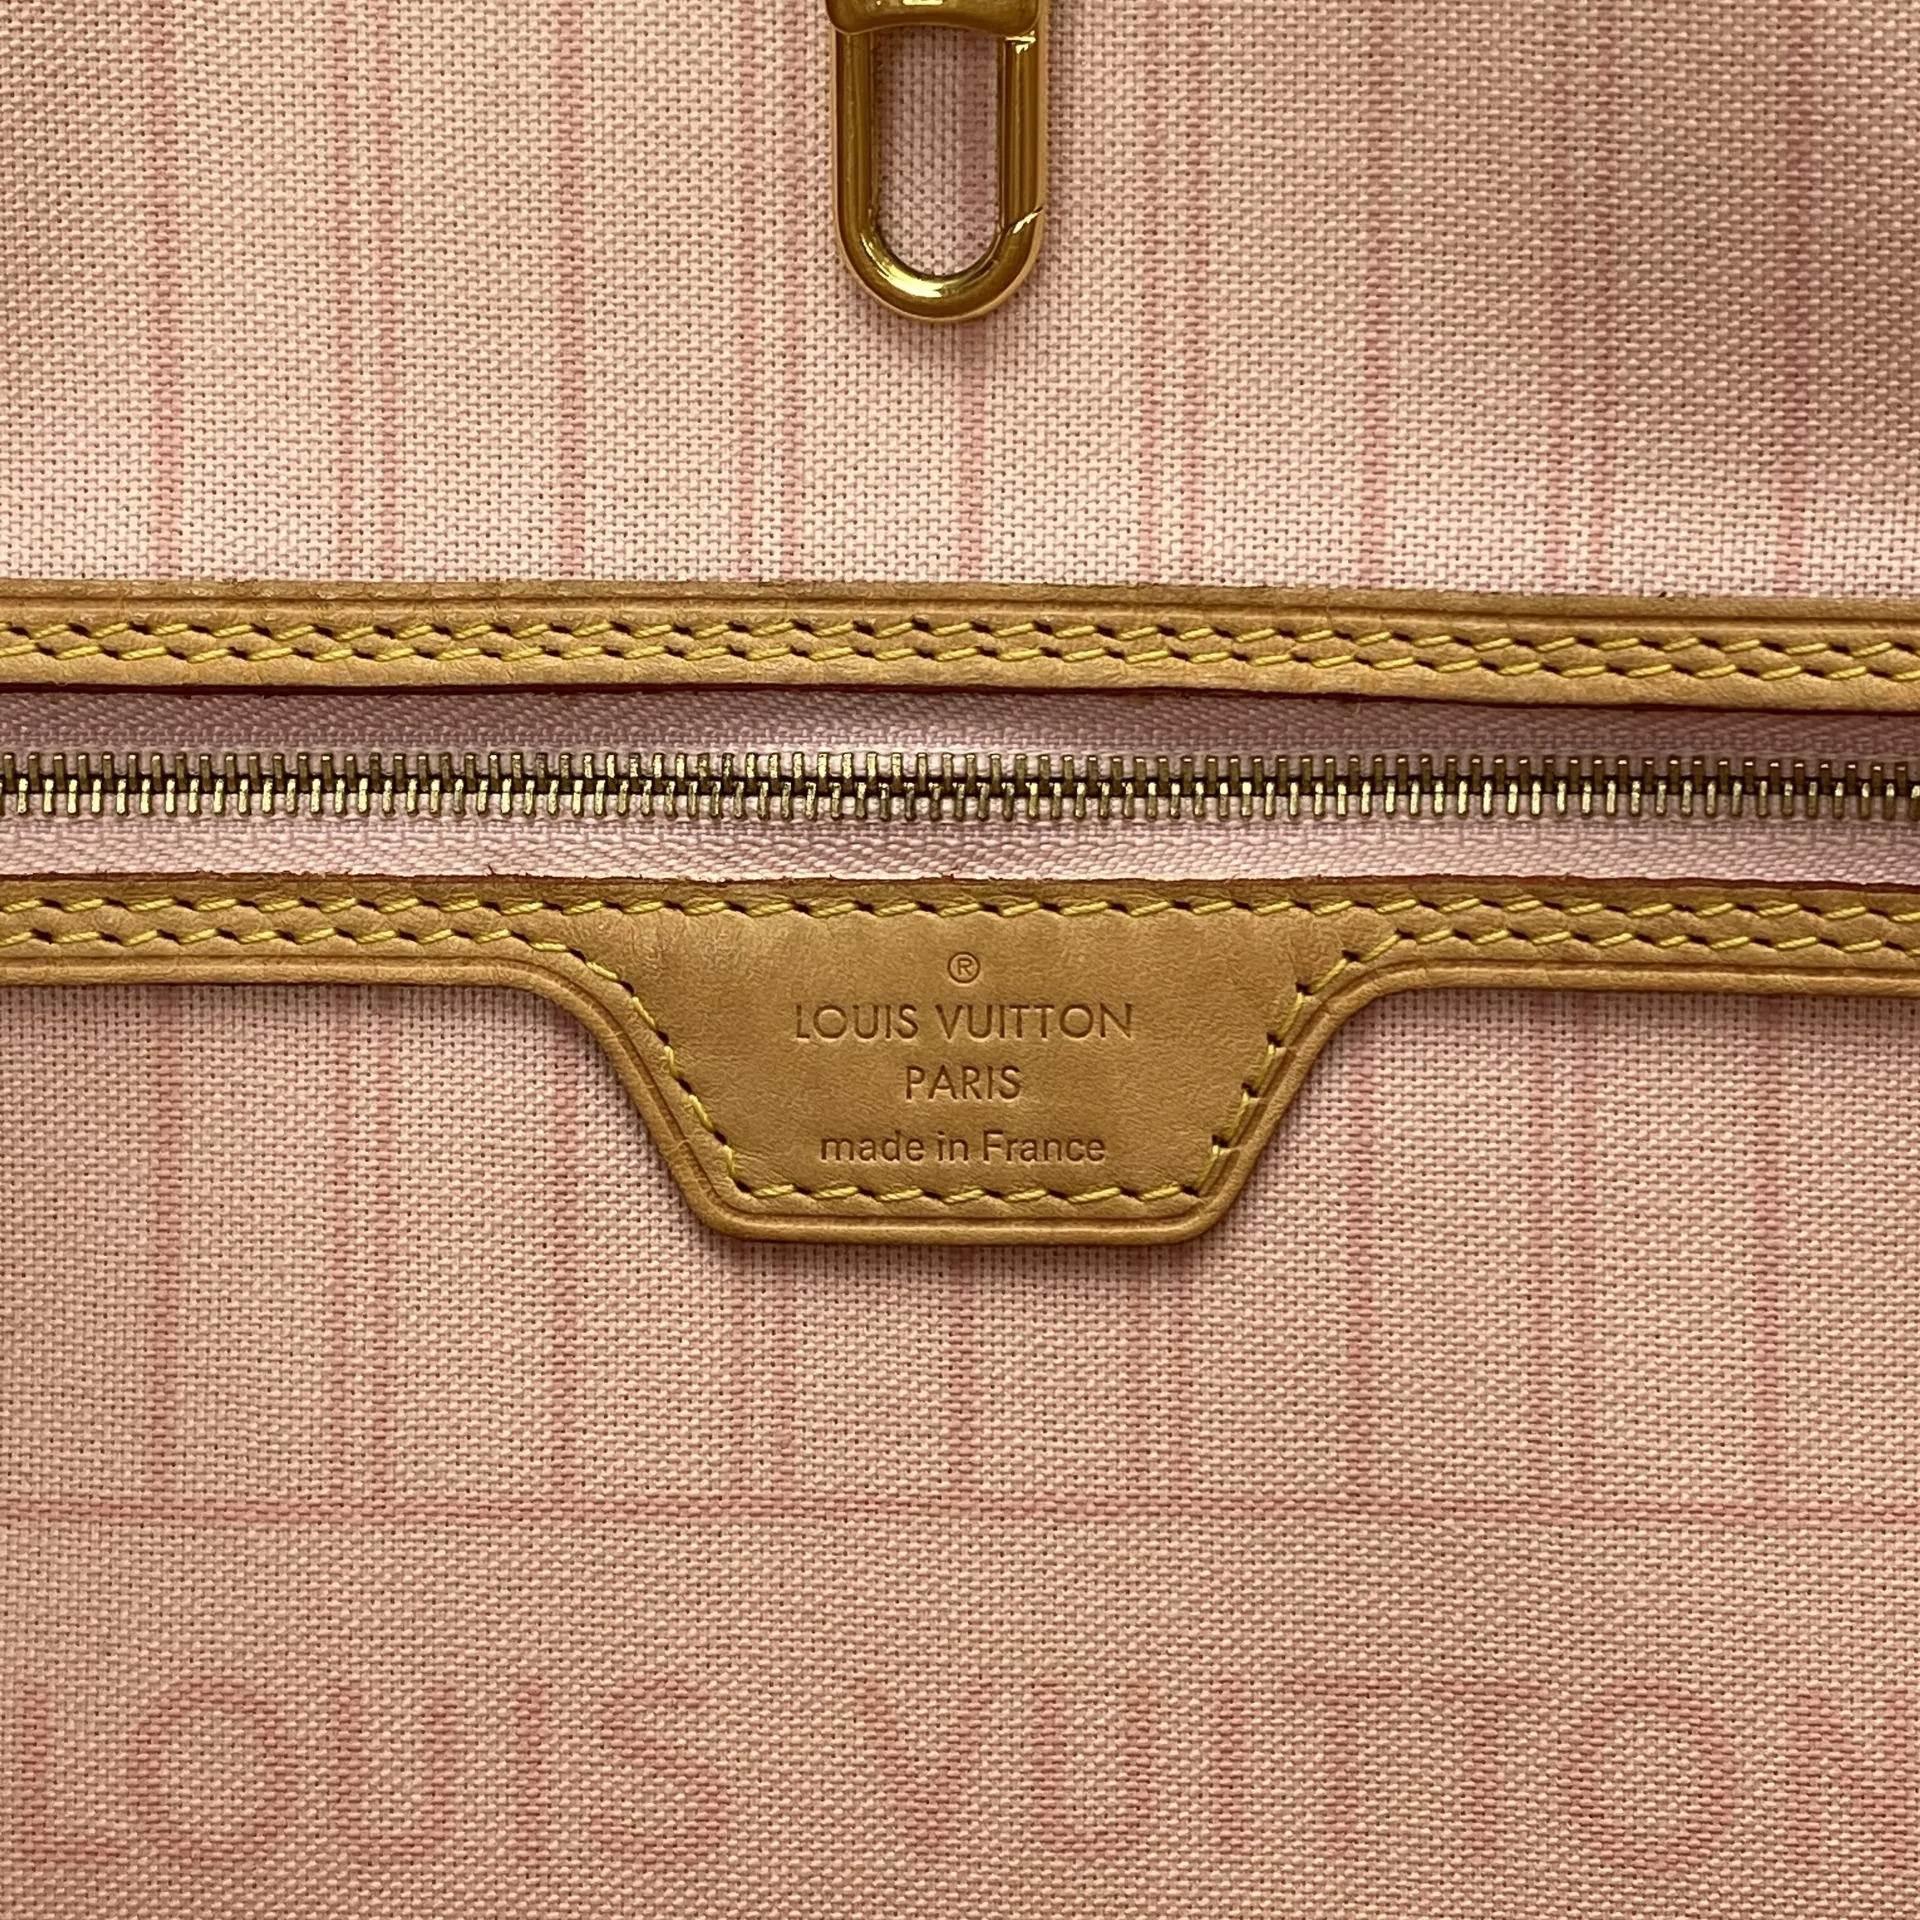 Bolsa Louis Vuitton Neverfull MM Damier Azur